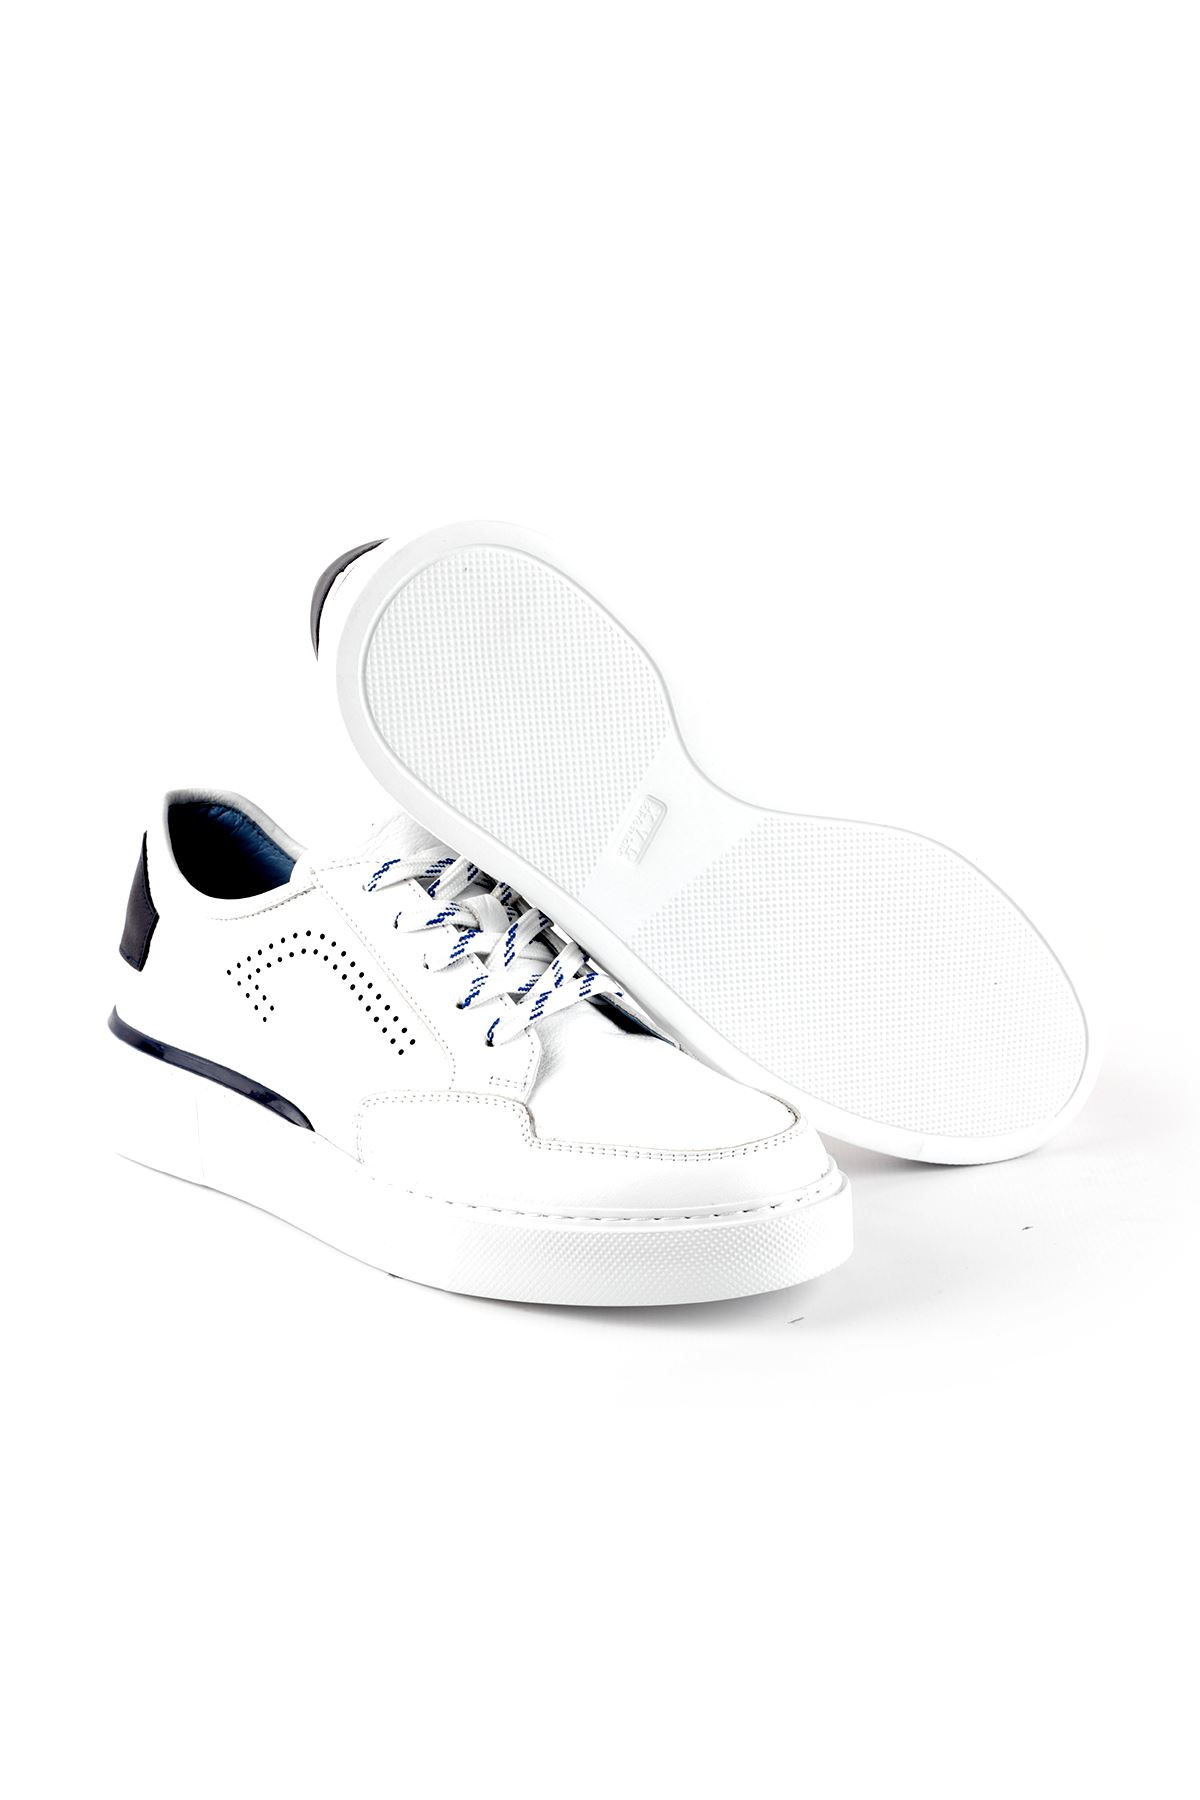 Libero L3784 Beyaz Spor Ayakkabı 